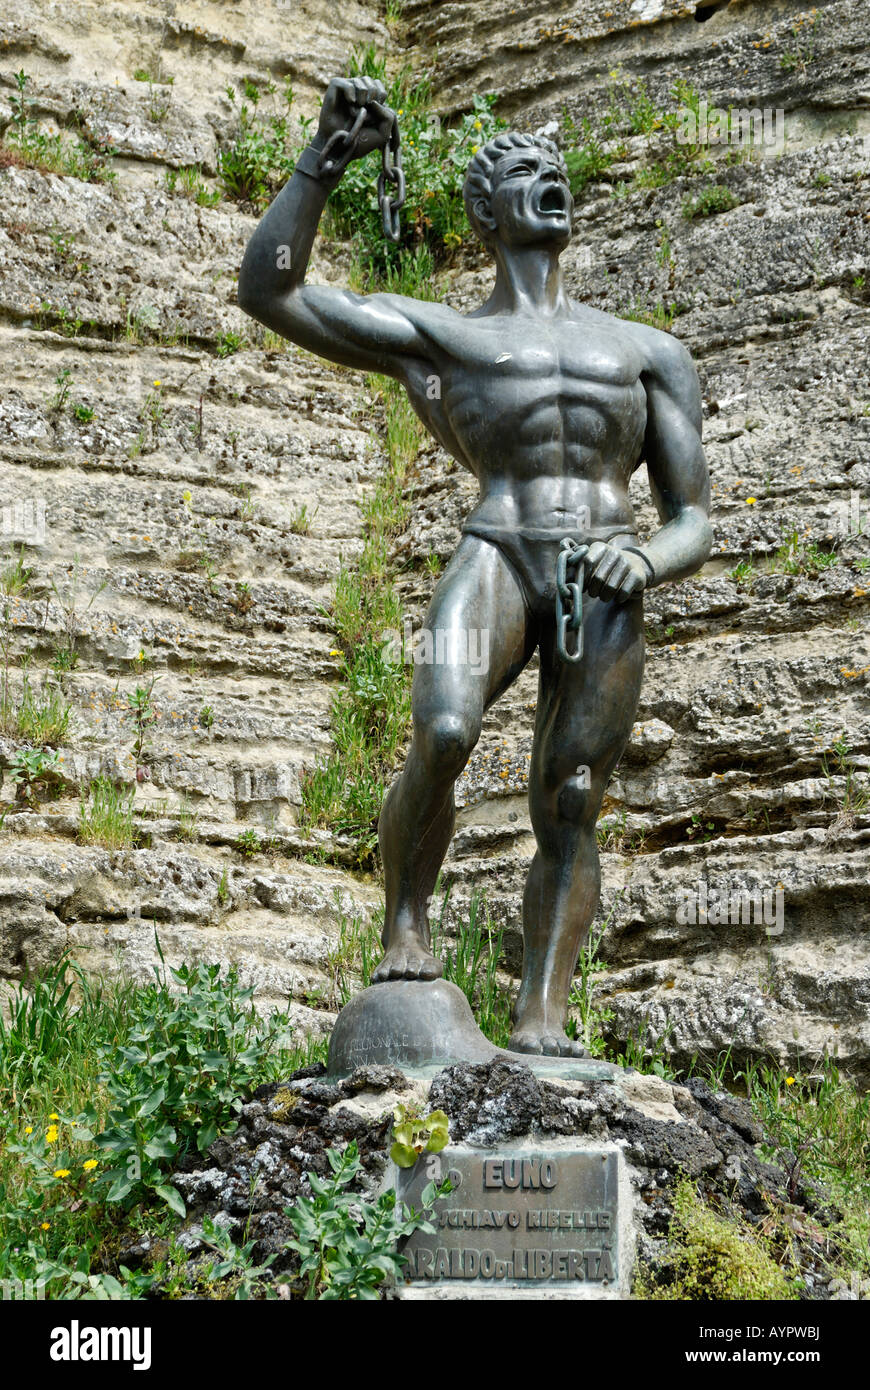 Statue of Eunus, slave revolt memorial, Enna, Sicily, Italy, Europe Stock Photo